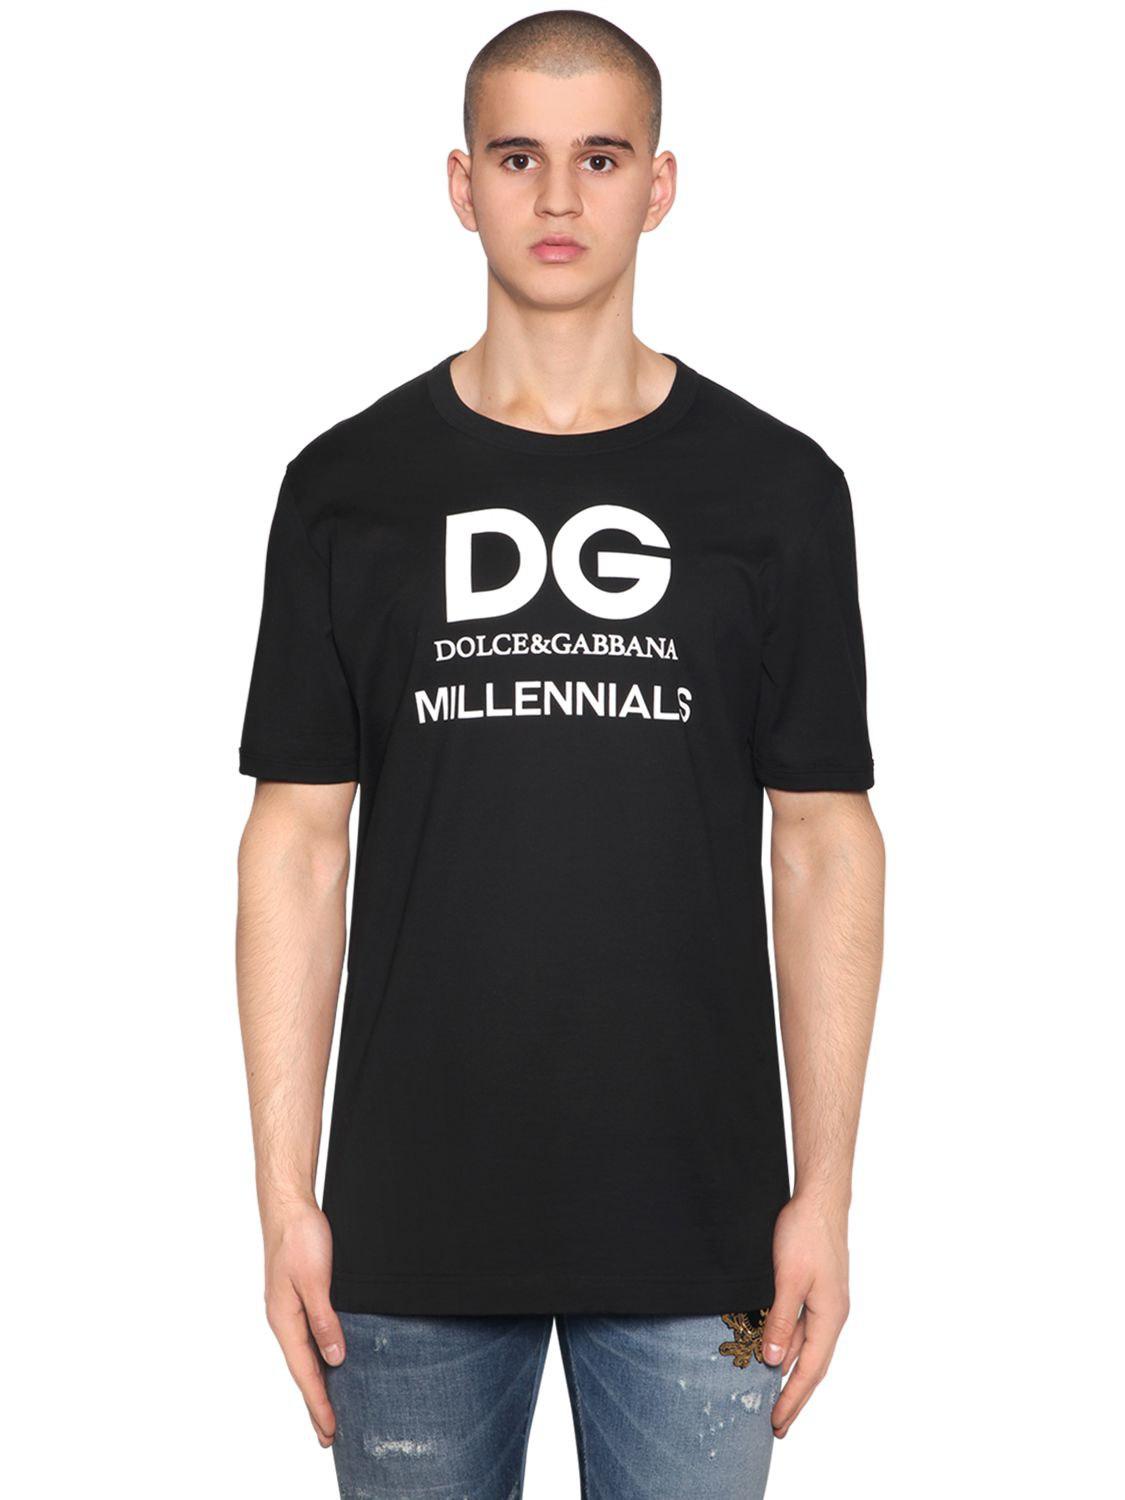 dolce gabbana millennials t shirt